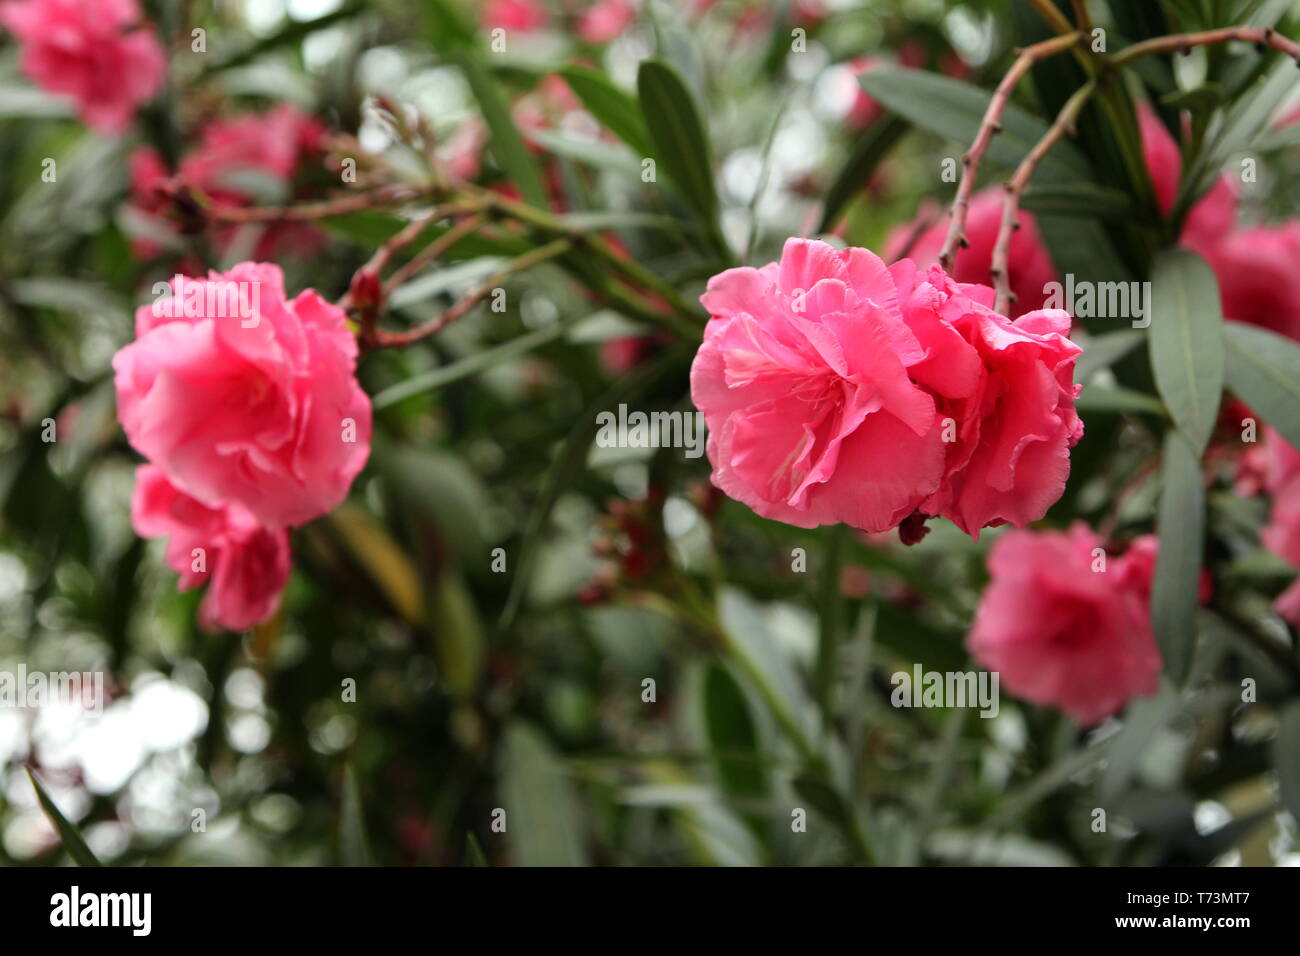 Nerium oleander. Rosea Plena. Stock Photo